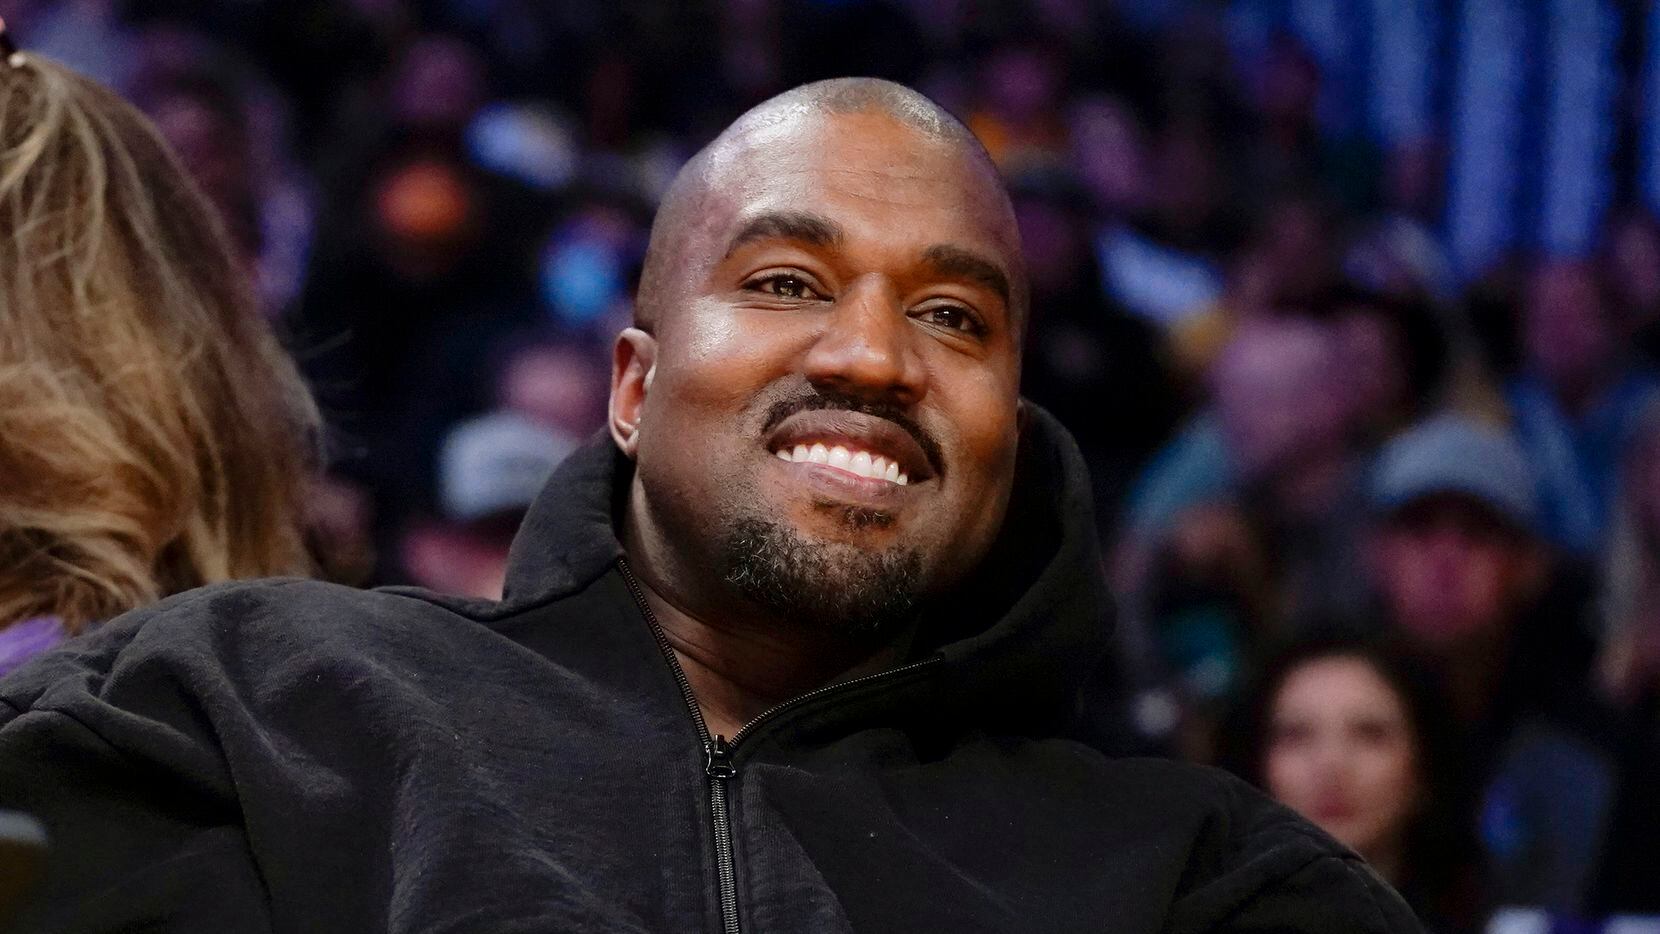 Kanye pierde contrato por antisemitas; ahora es Adidas